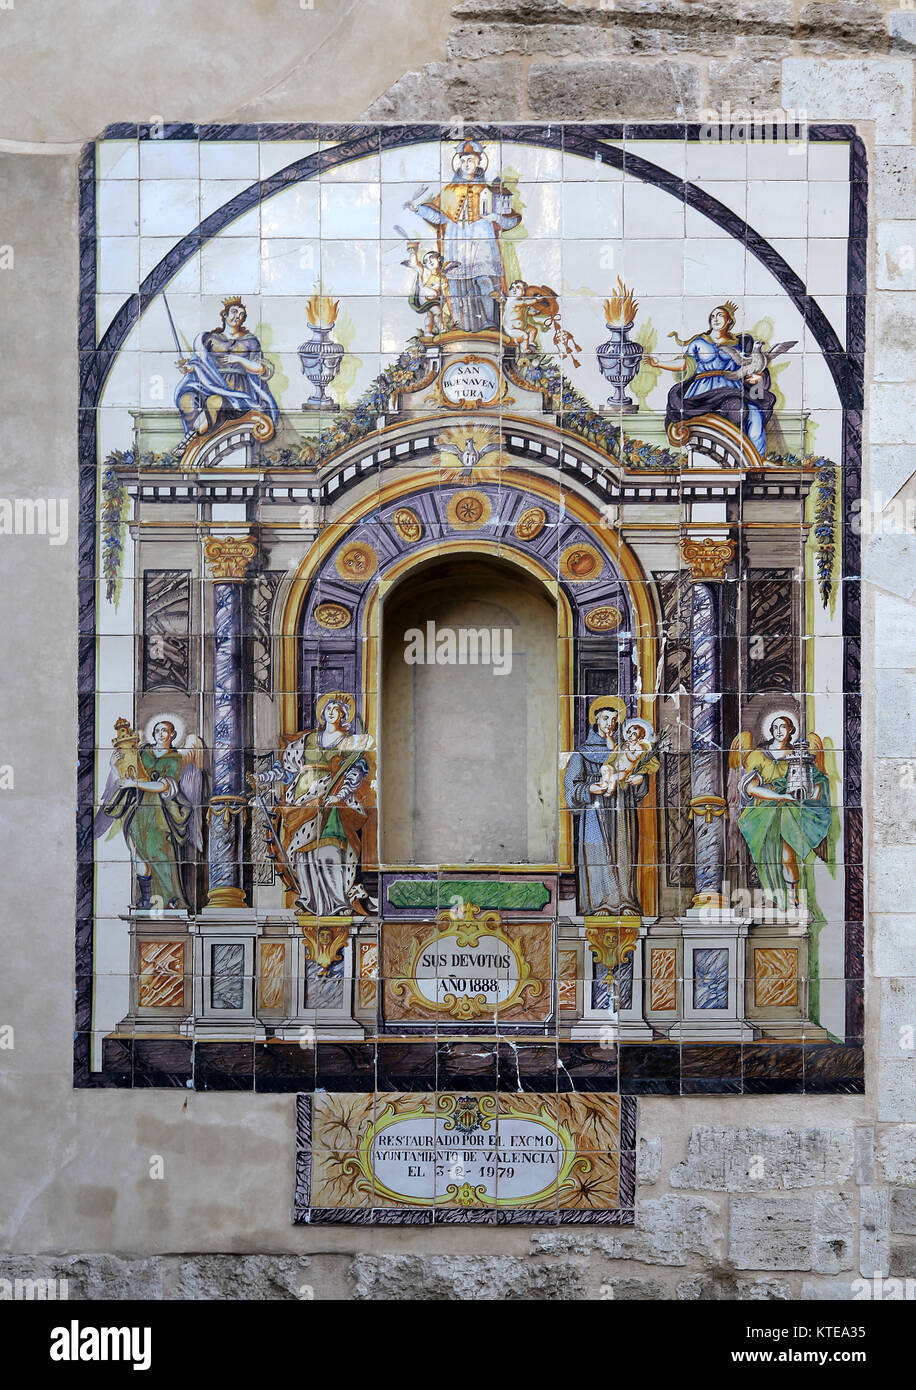 Tile mural outside the Iglesia de Santa Catalina Mártir in Valencia Spain Stock Photo